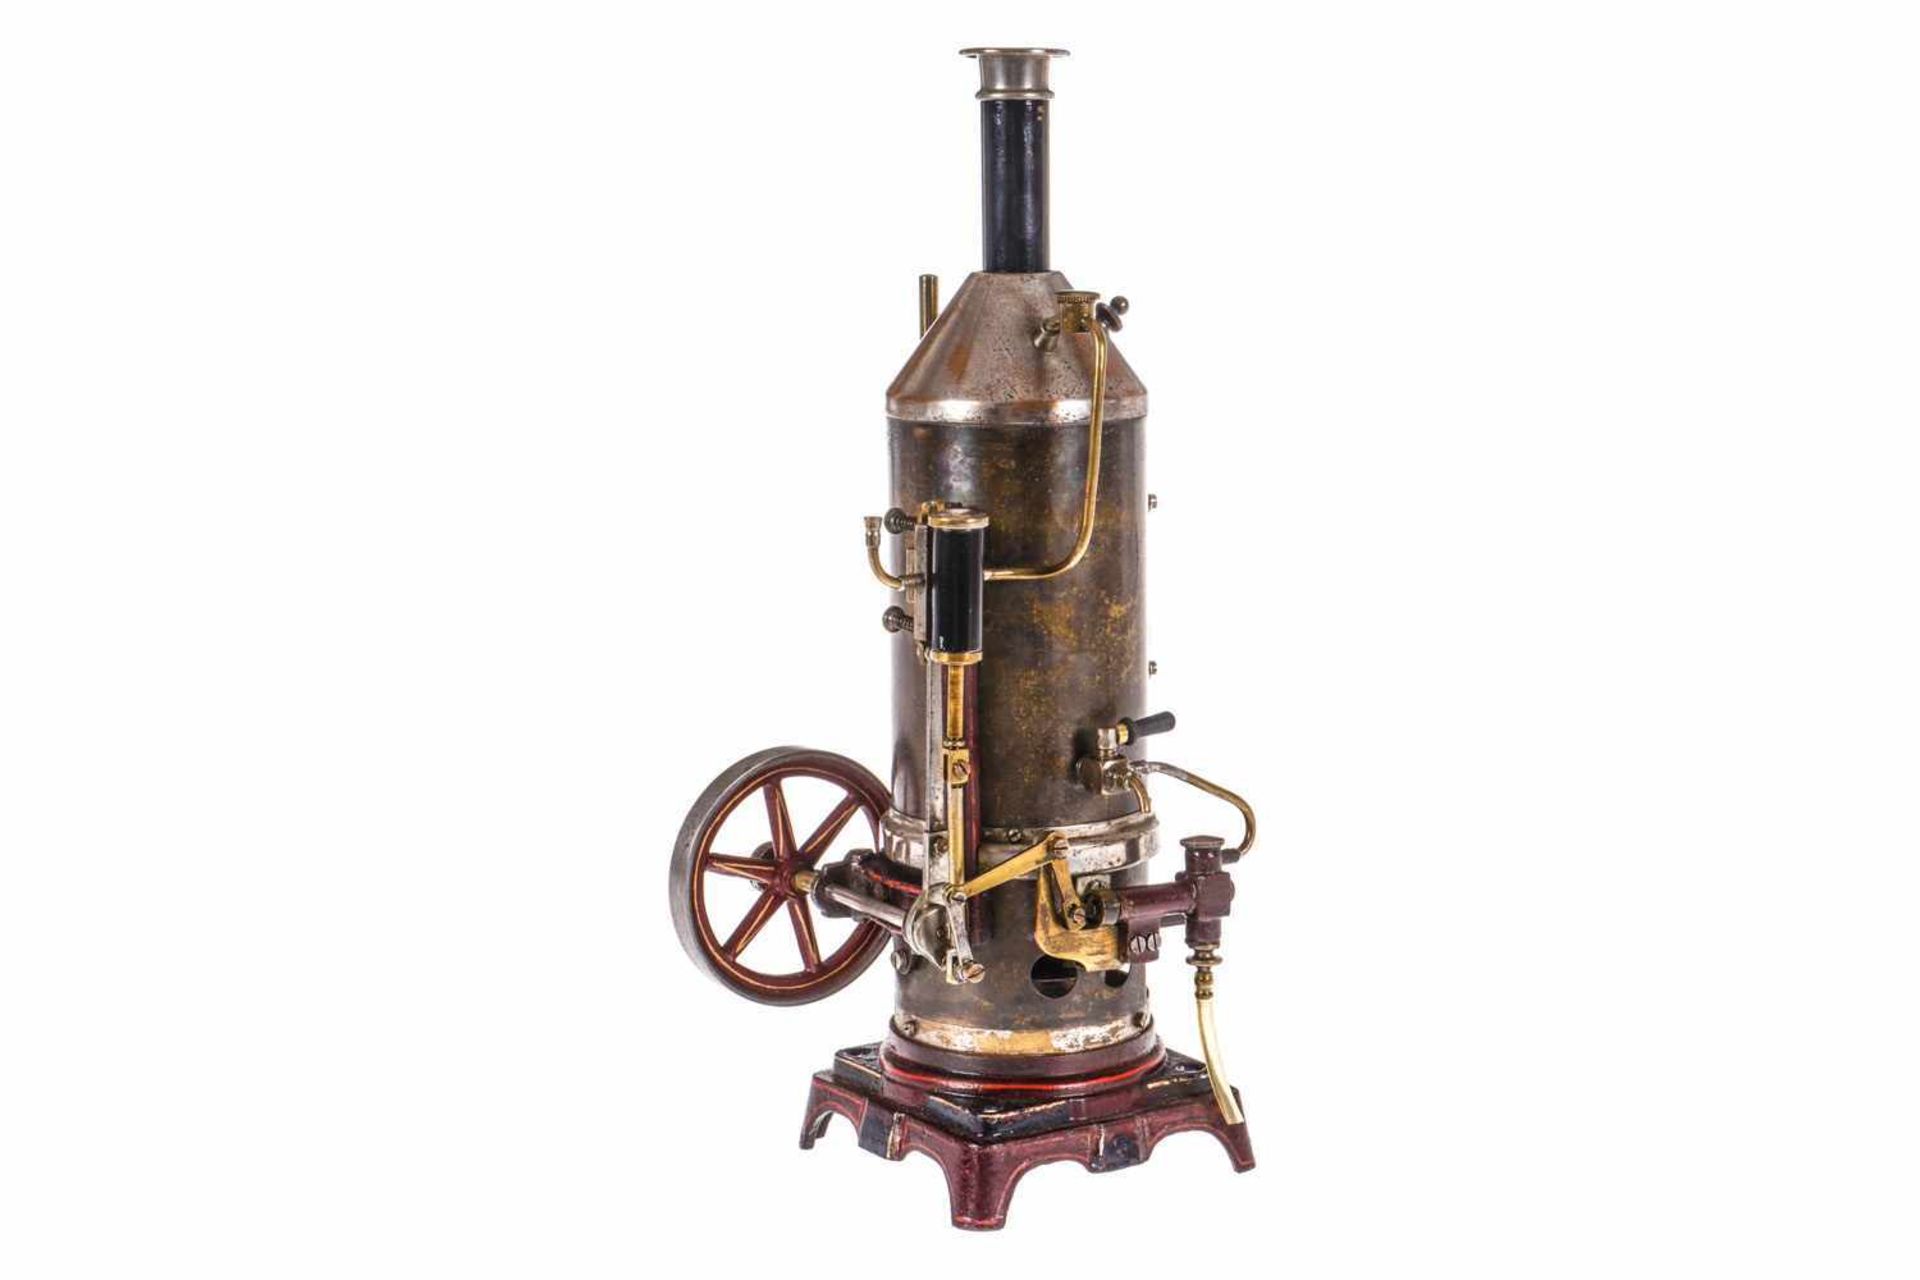 Bing stehende Dampfmaschine, KD 7, mit Armaturen und Brenner, feststehender Zylinder mit